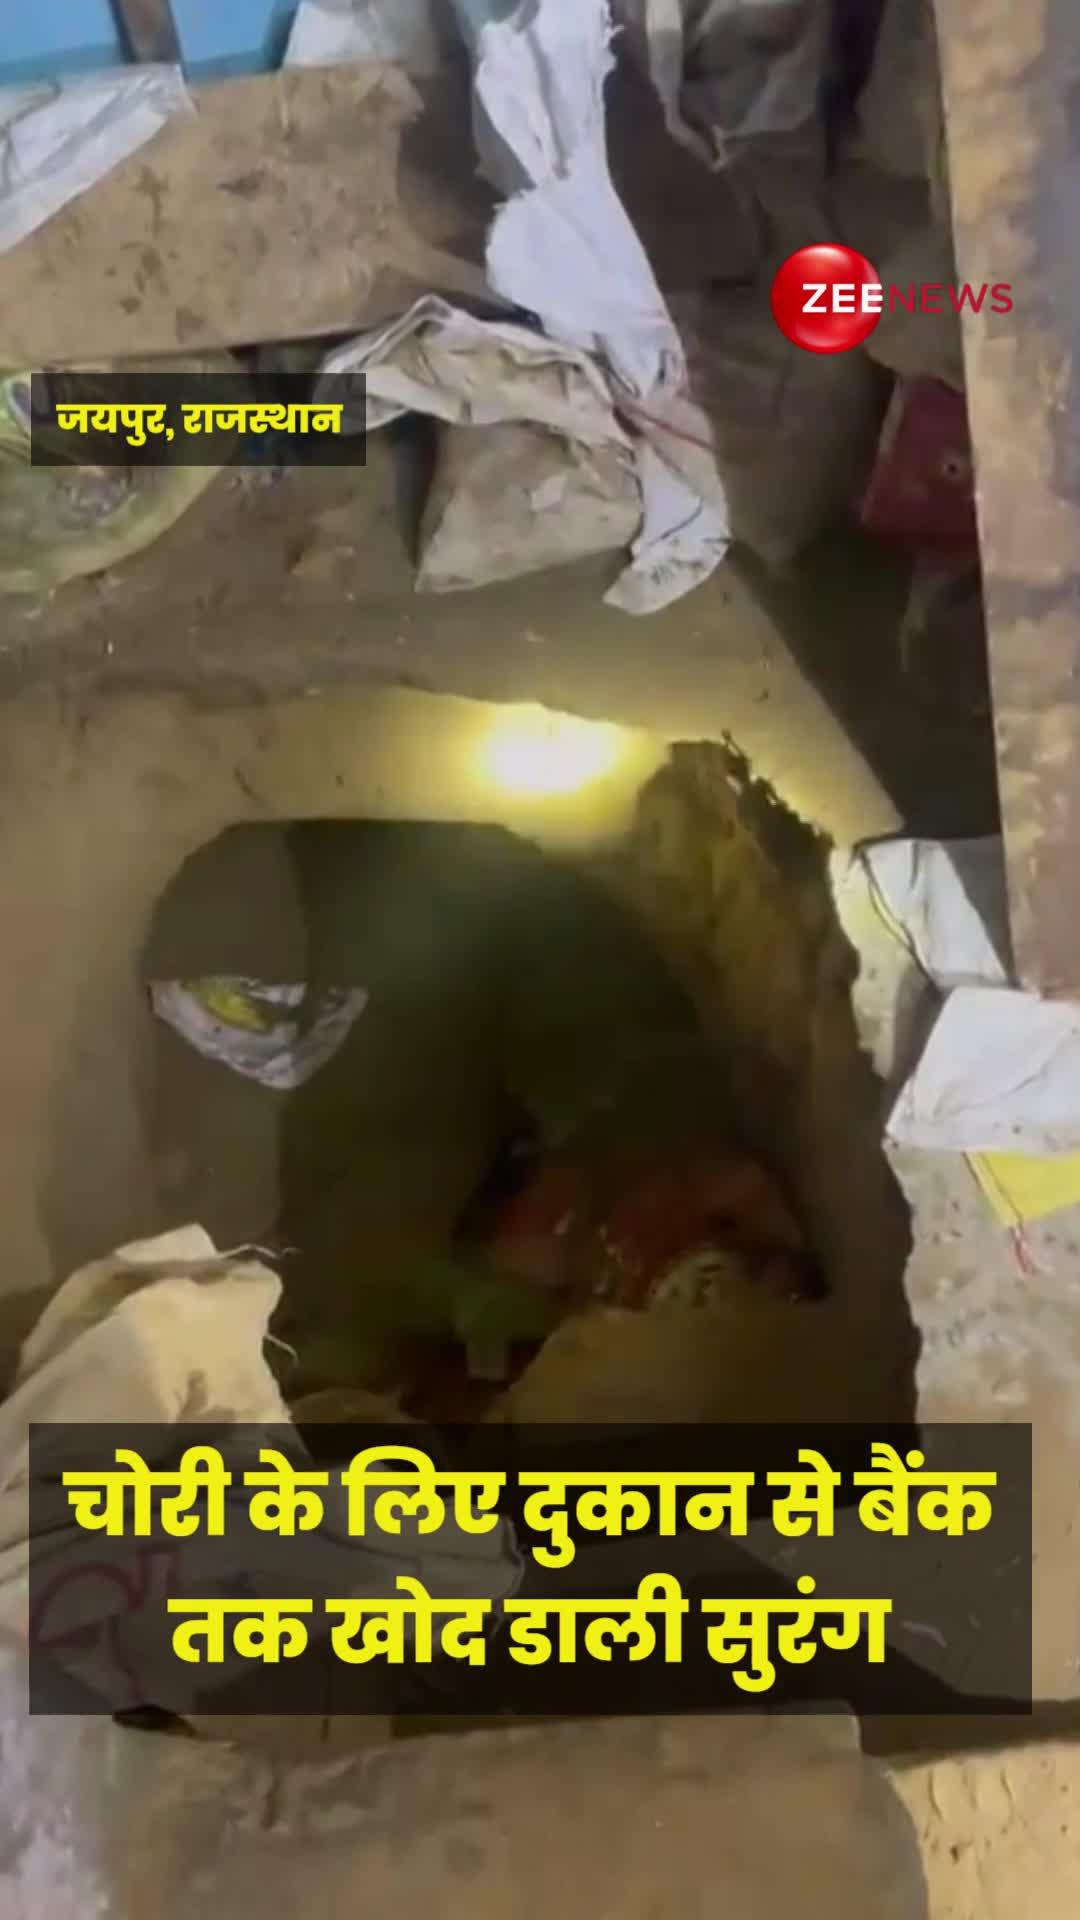 जयपुर: चोरी के लिए दुकान से बैंक तक खोद डाली सुरंग